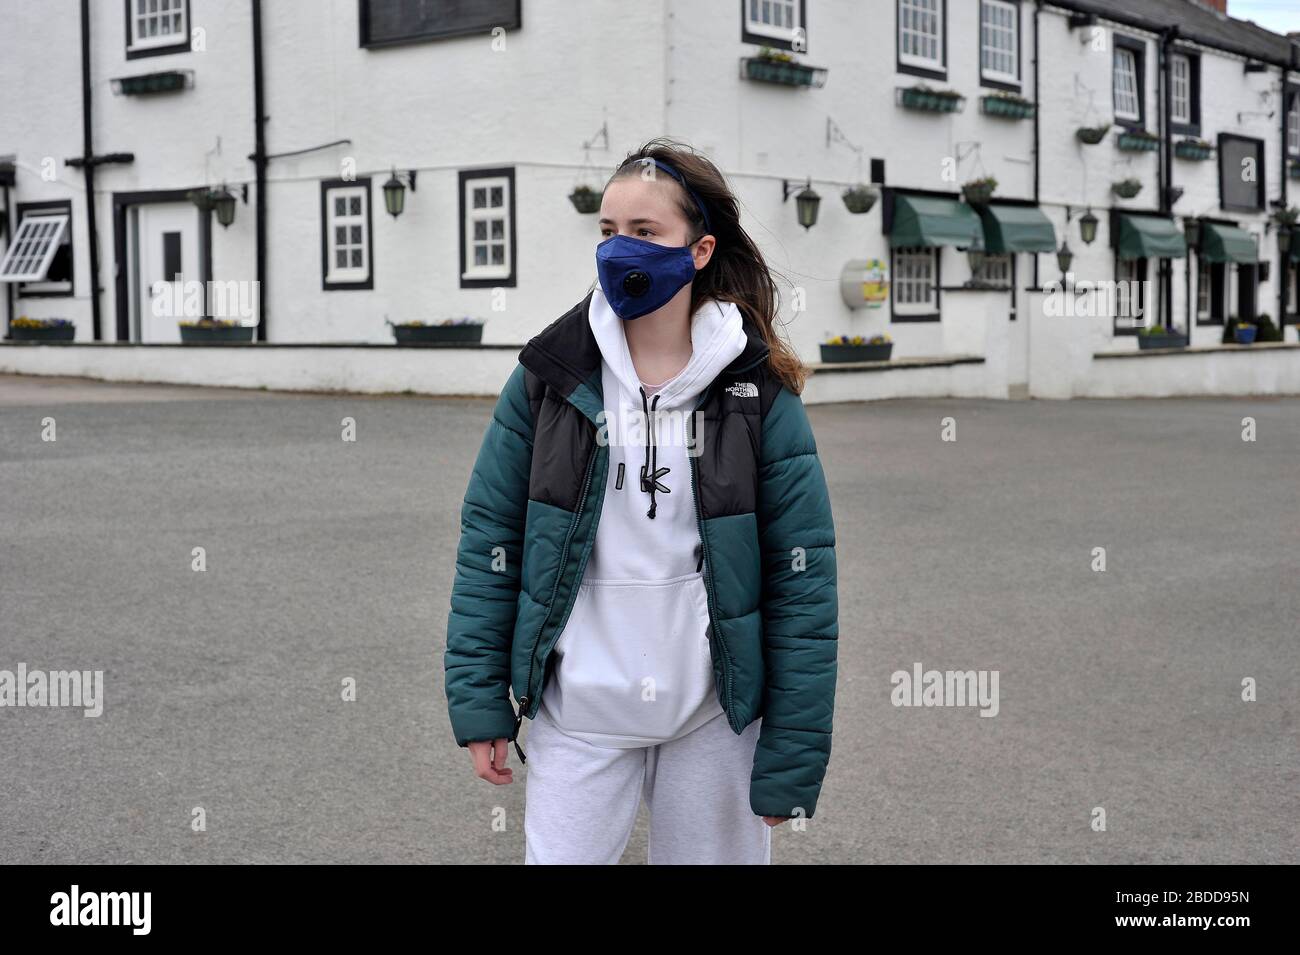 Young teenage girl wearing mask during coronavirus outbreak Stock Photo